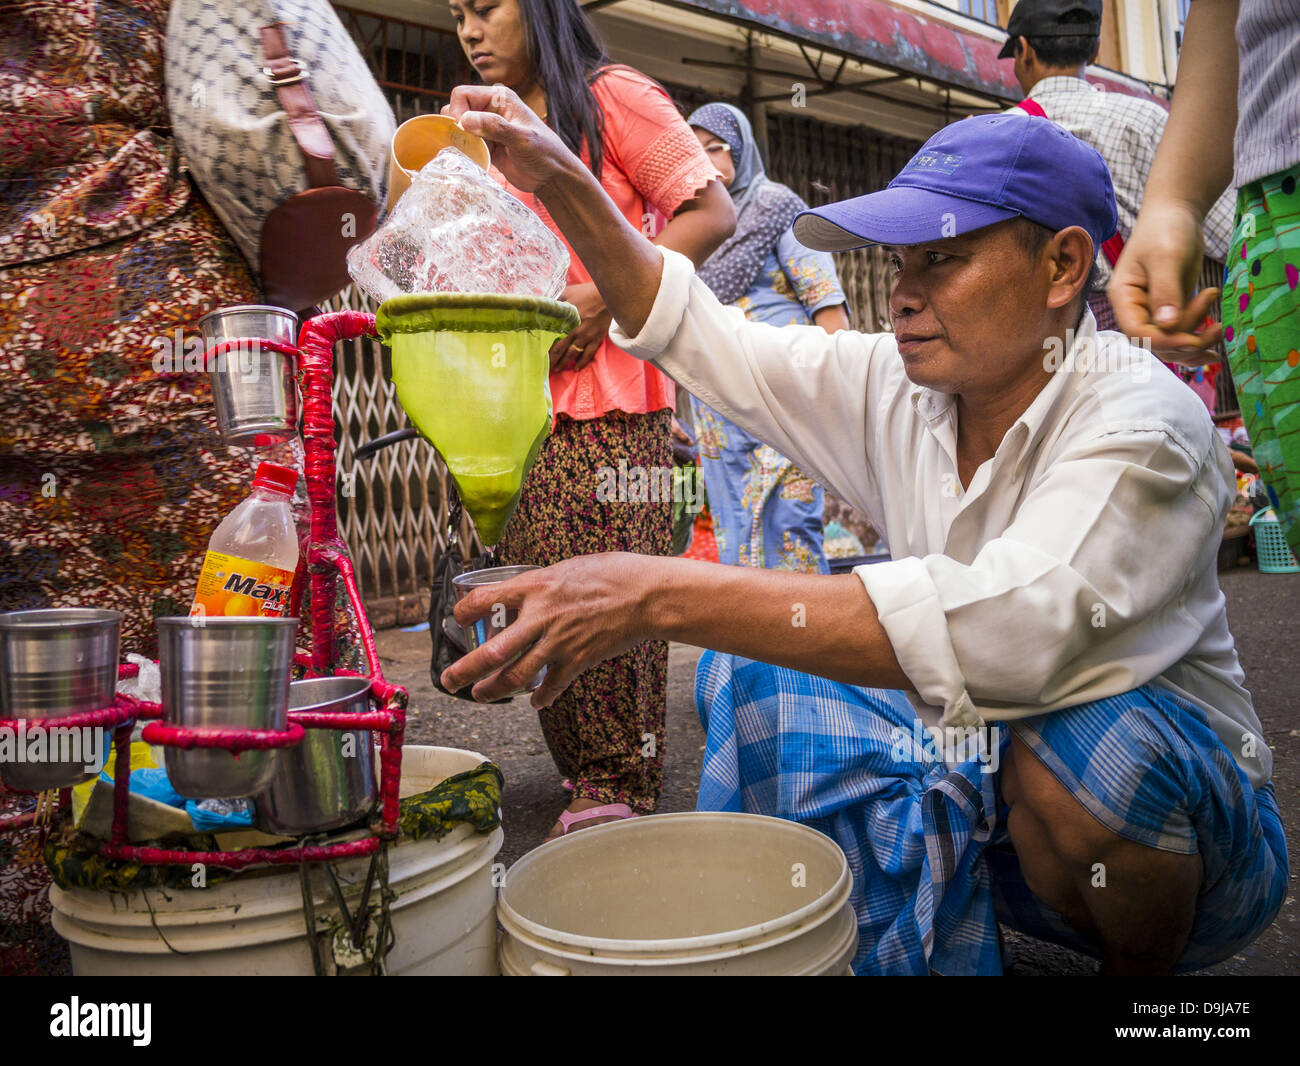 16 juin 2013 - Yangon, Myanmar - un vendeur d'eau dans la région de Yangon.  Il remplit des bouteilles d'eau en plastique par l'eau du robinet sur un  bloc de glace. Yangon,